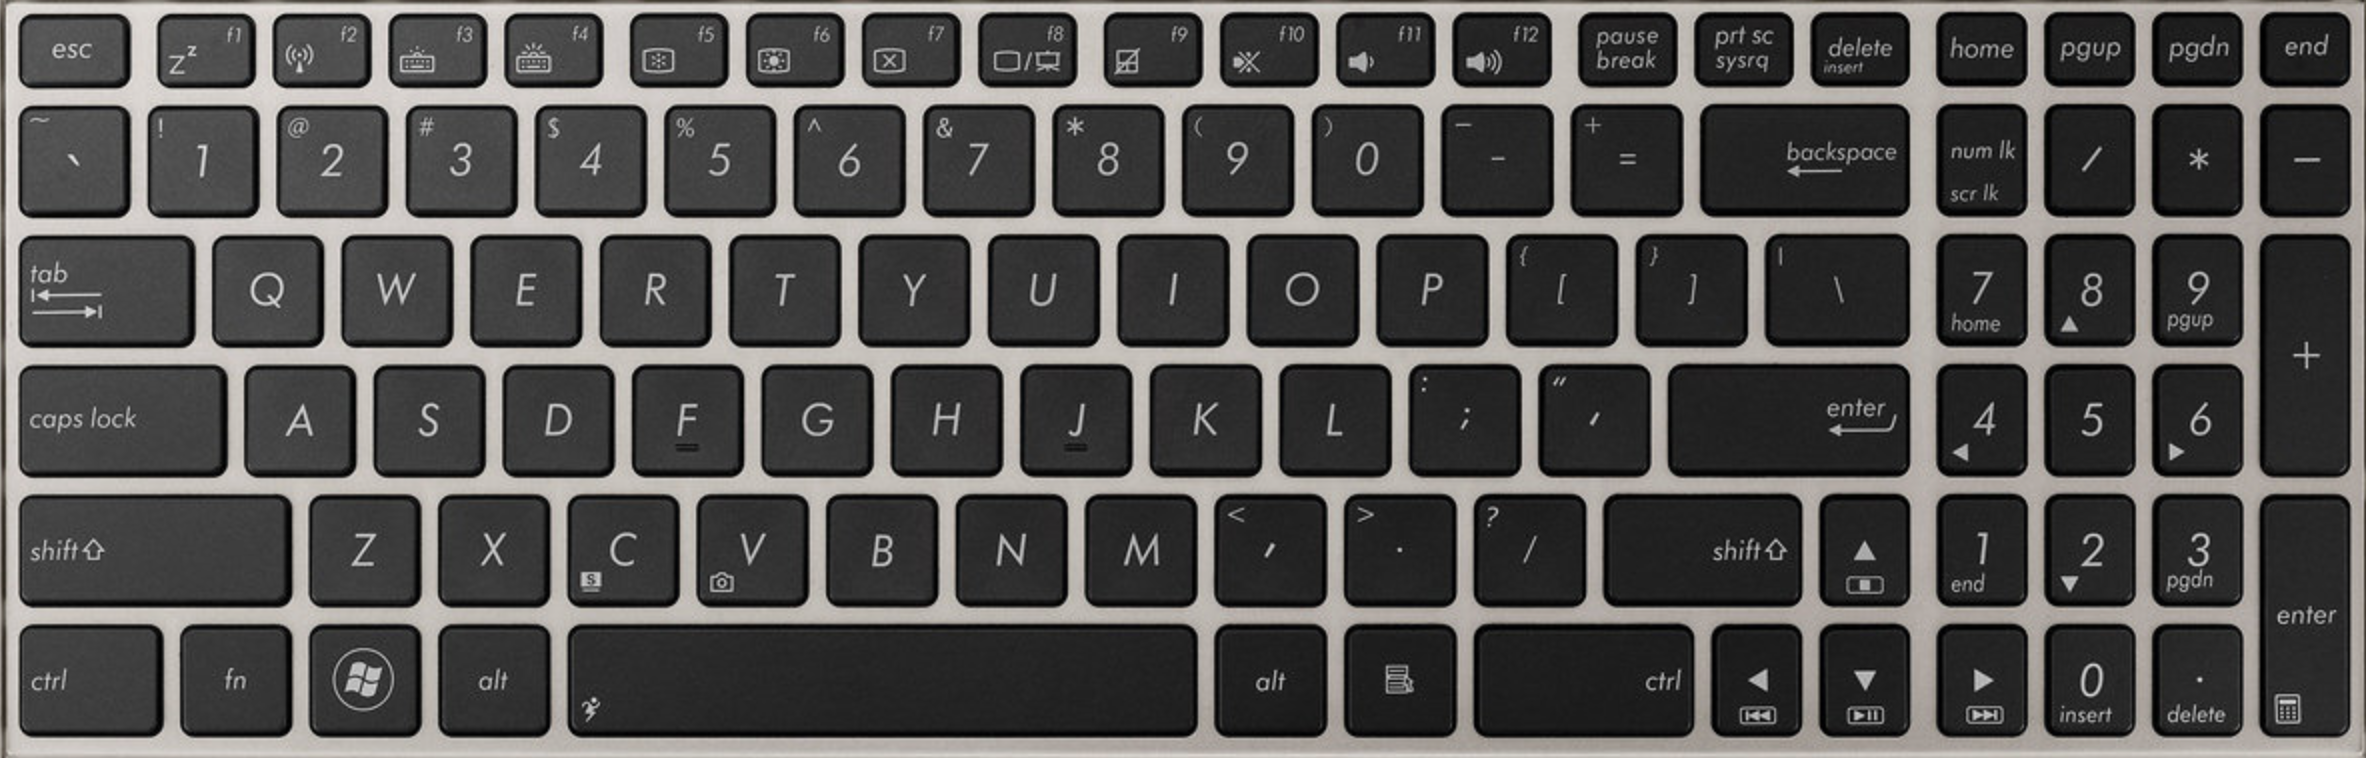 asus-UX51-replacement-laptop-keyboard-keys